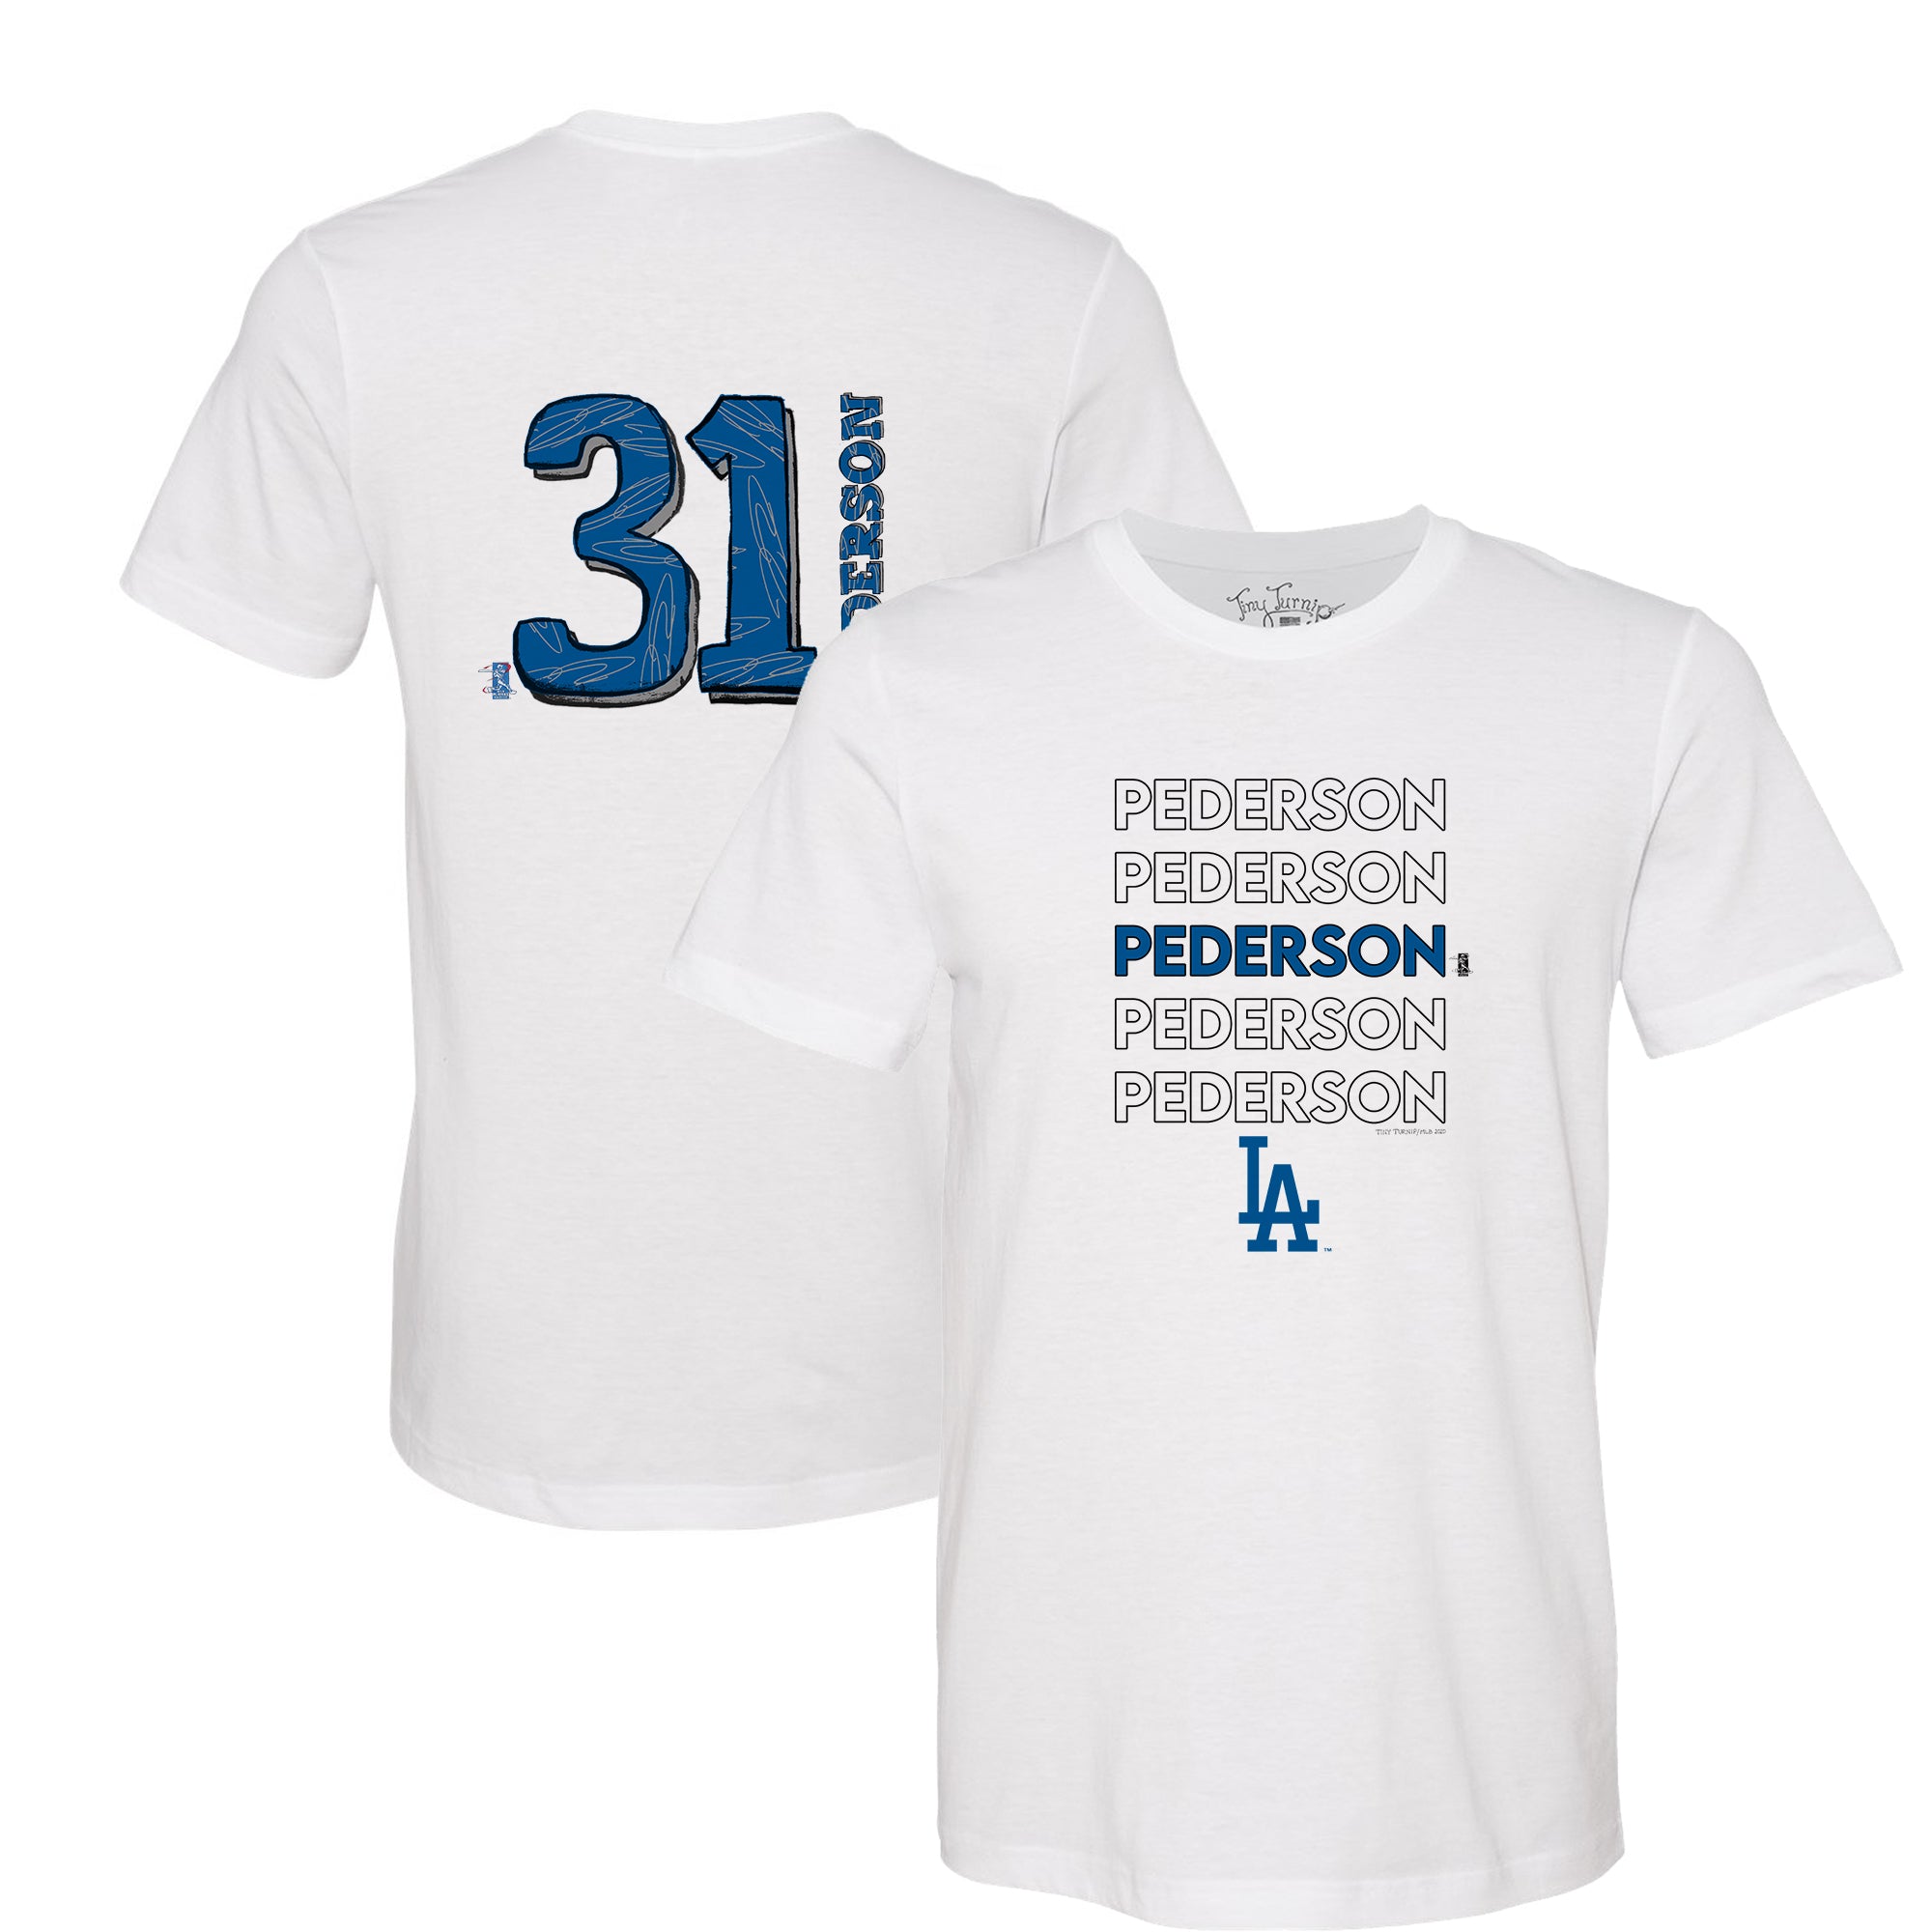 Joc Pederson Jersey  Dodgers Joc Pederson Jerseys - Los Angeles